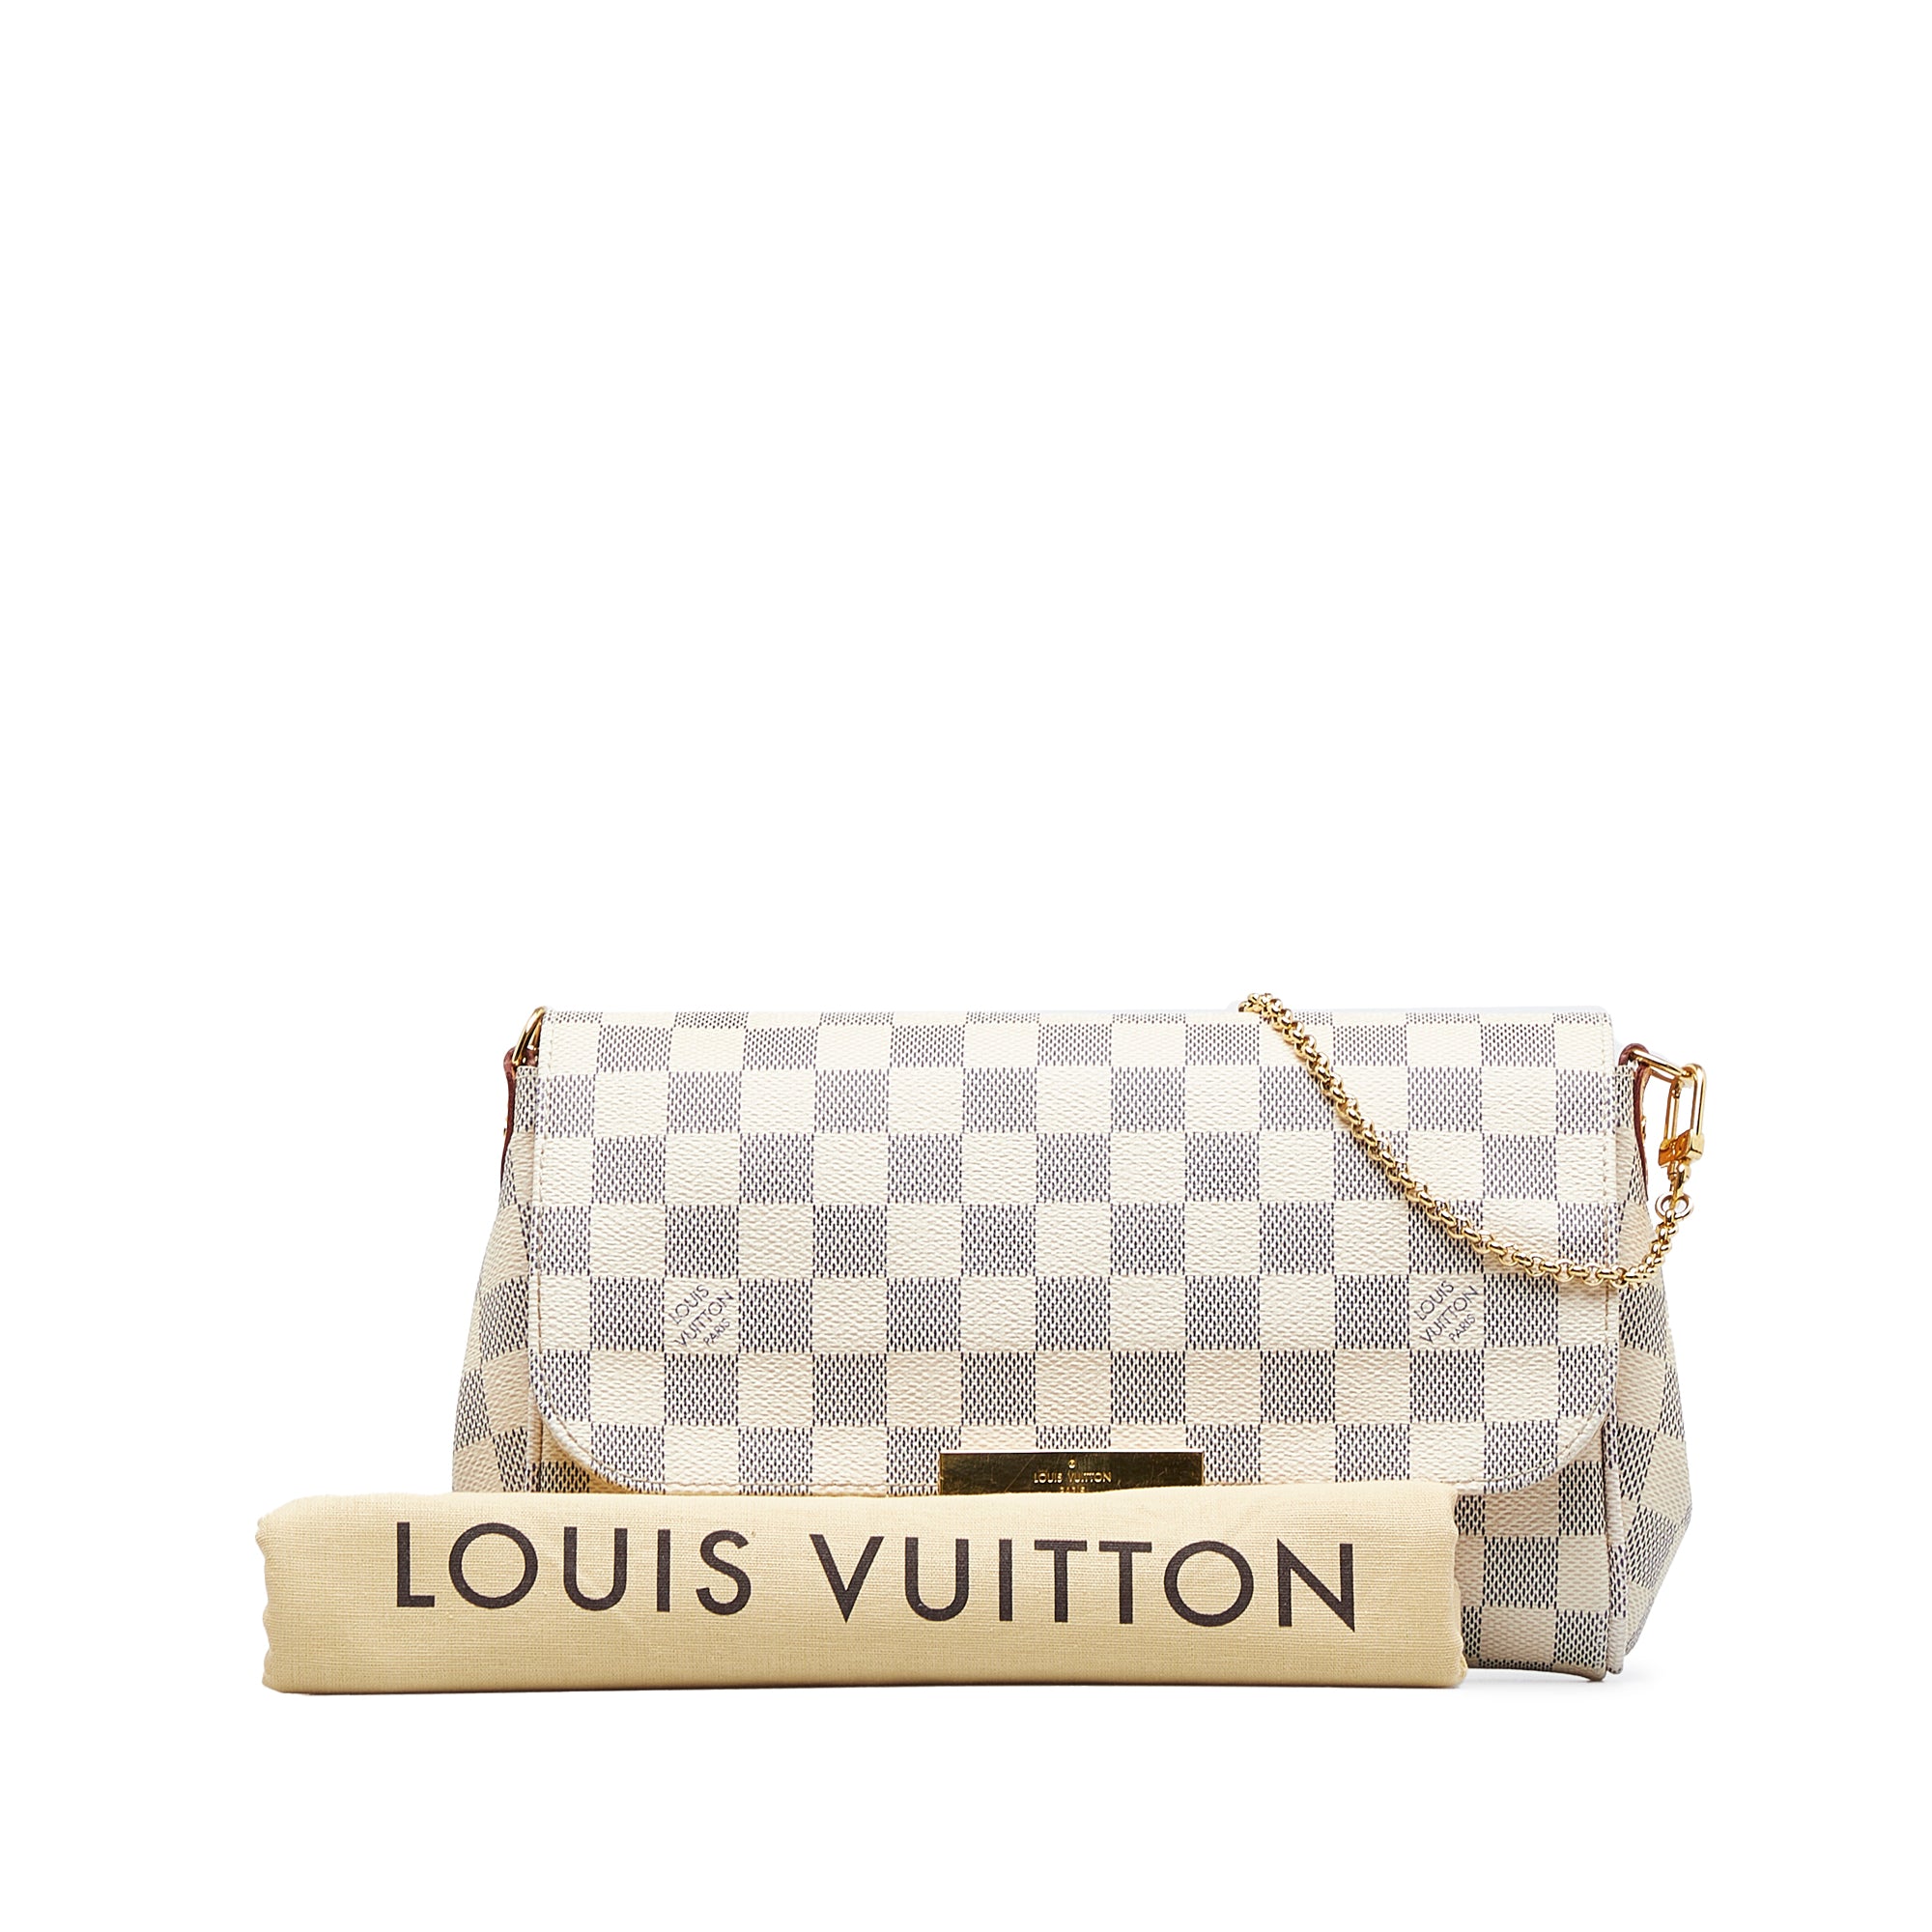 Louis Vuitton de segunda mano: Cómo saber si es original